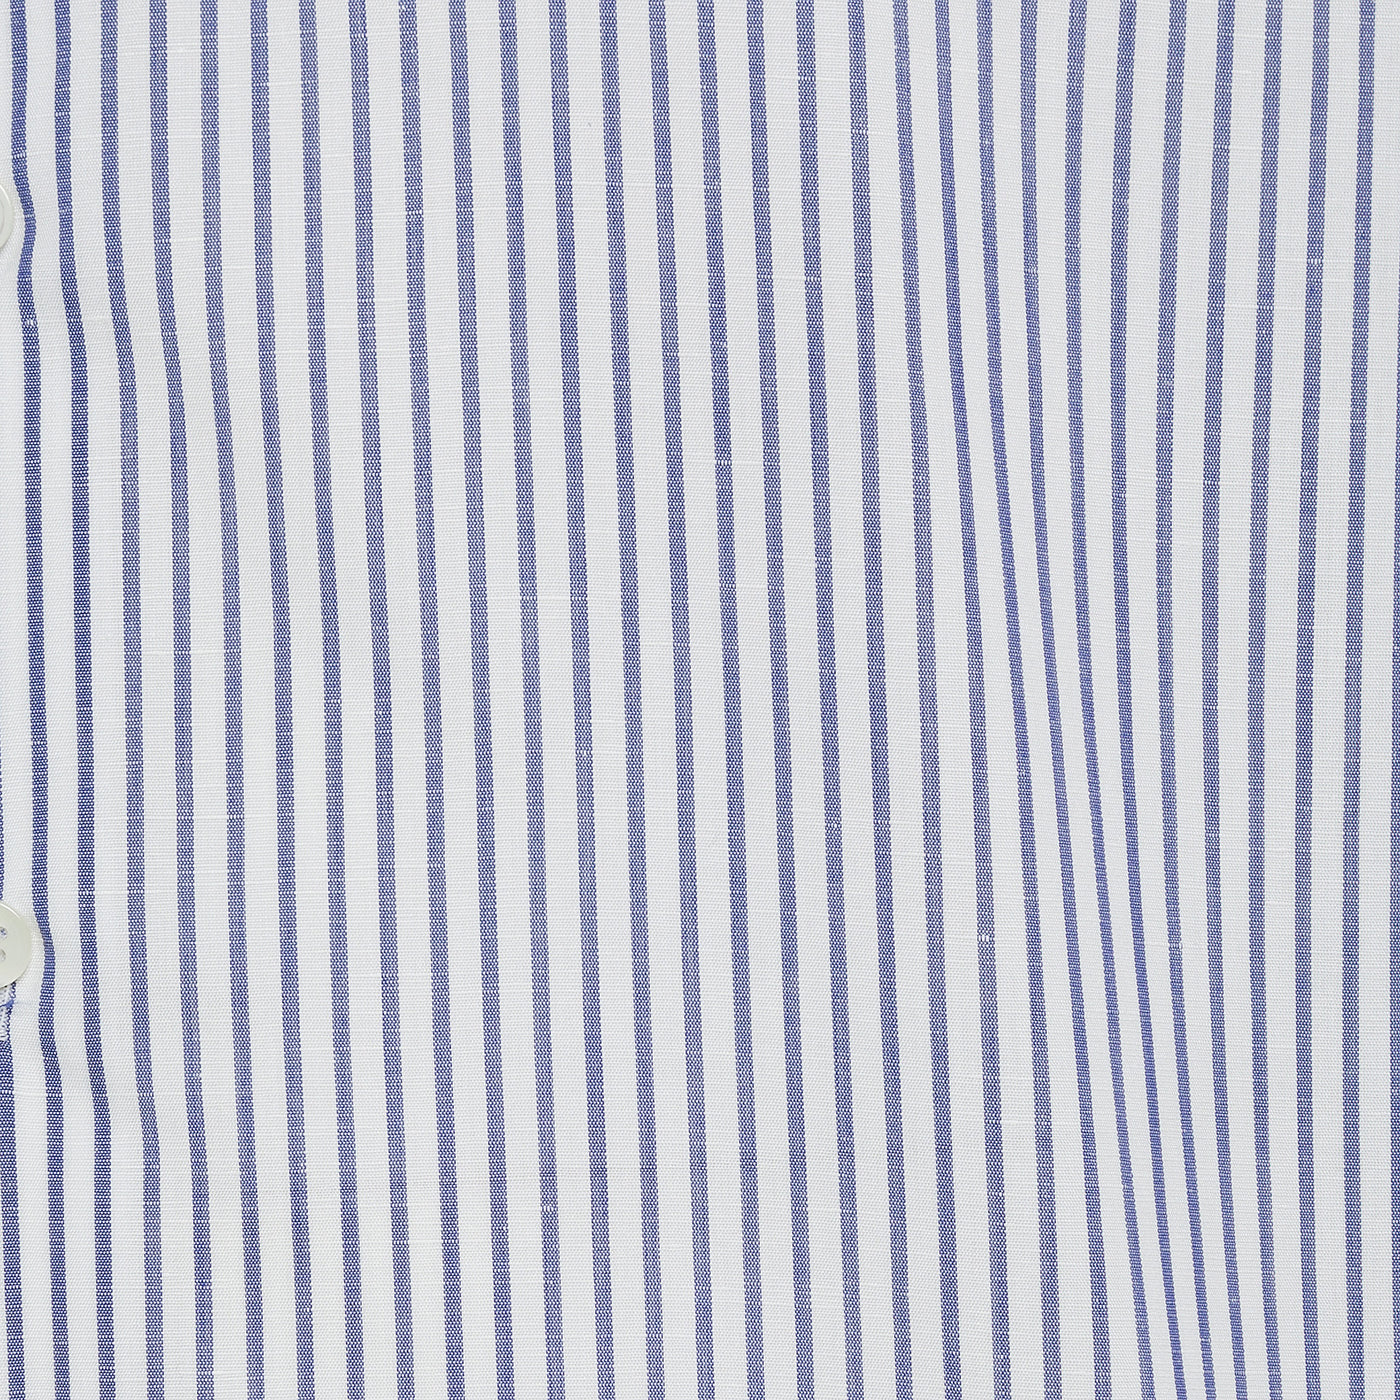 Clamenc shirt Stripe Journey Cotton Linen